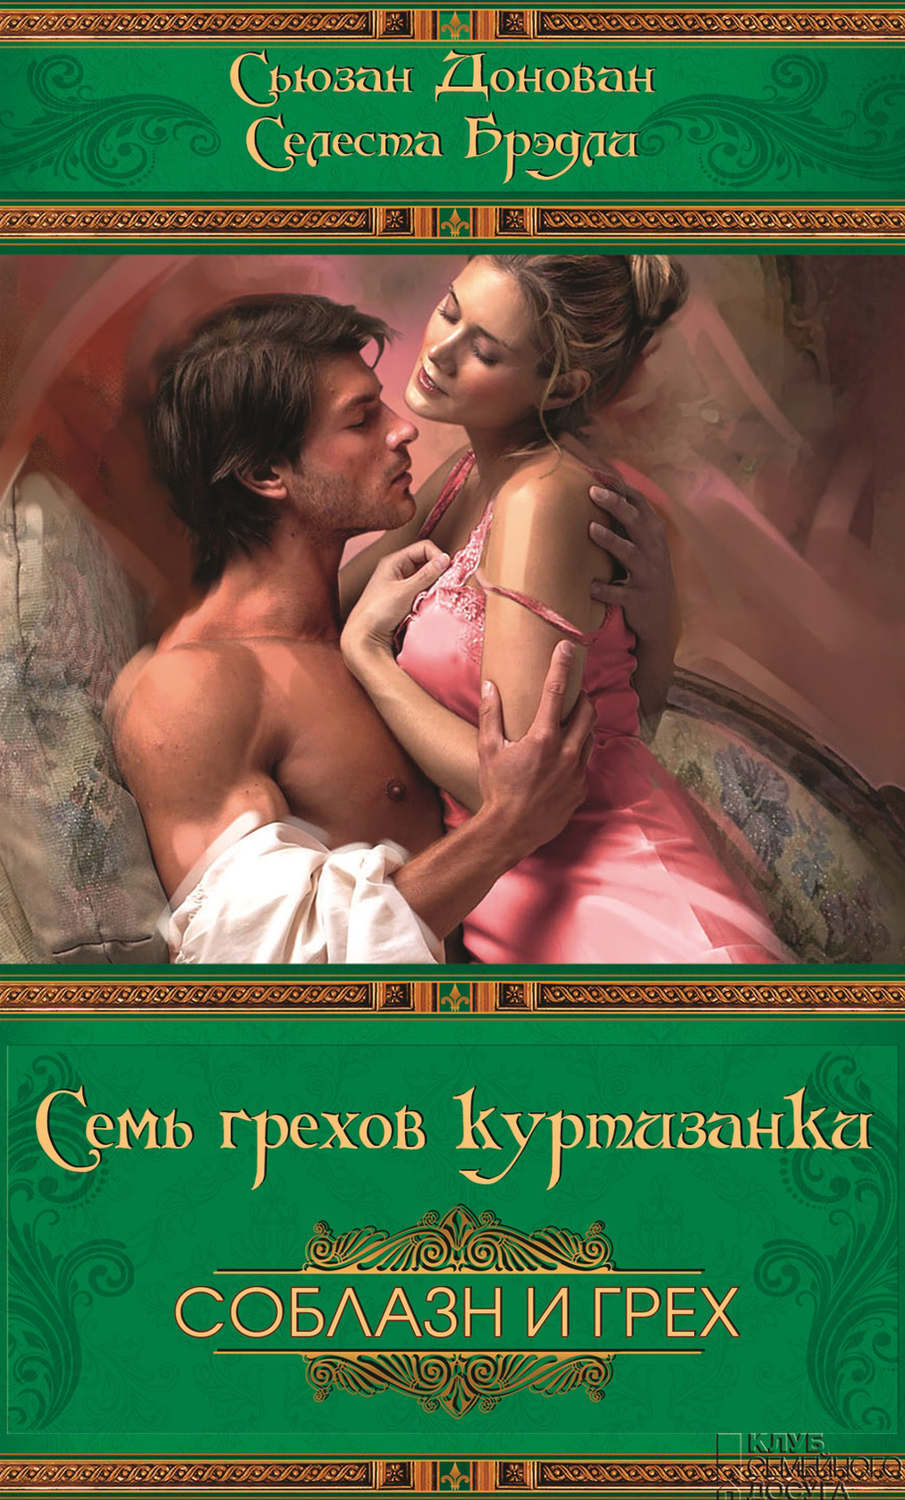 любовно исторические романы с элементами эротики фото 43